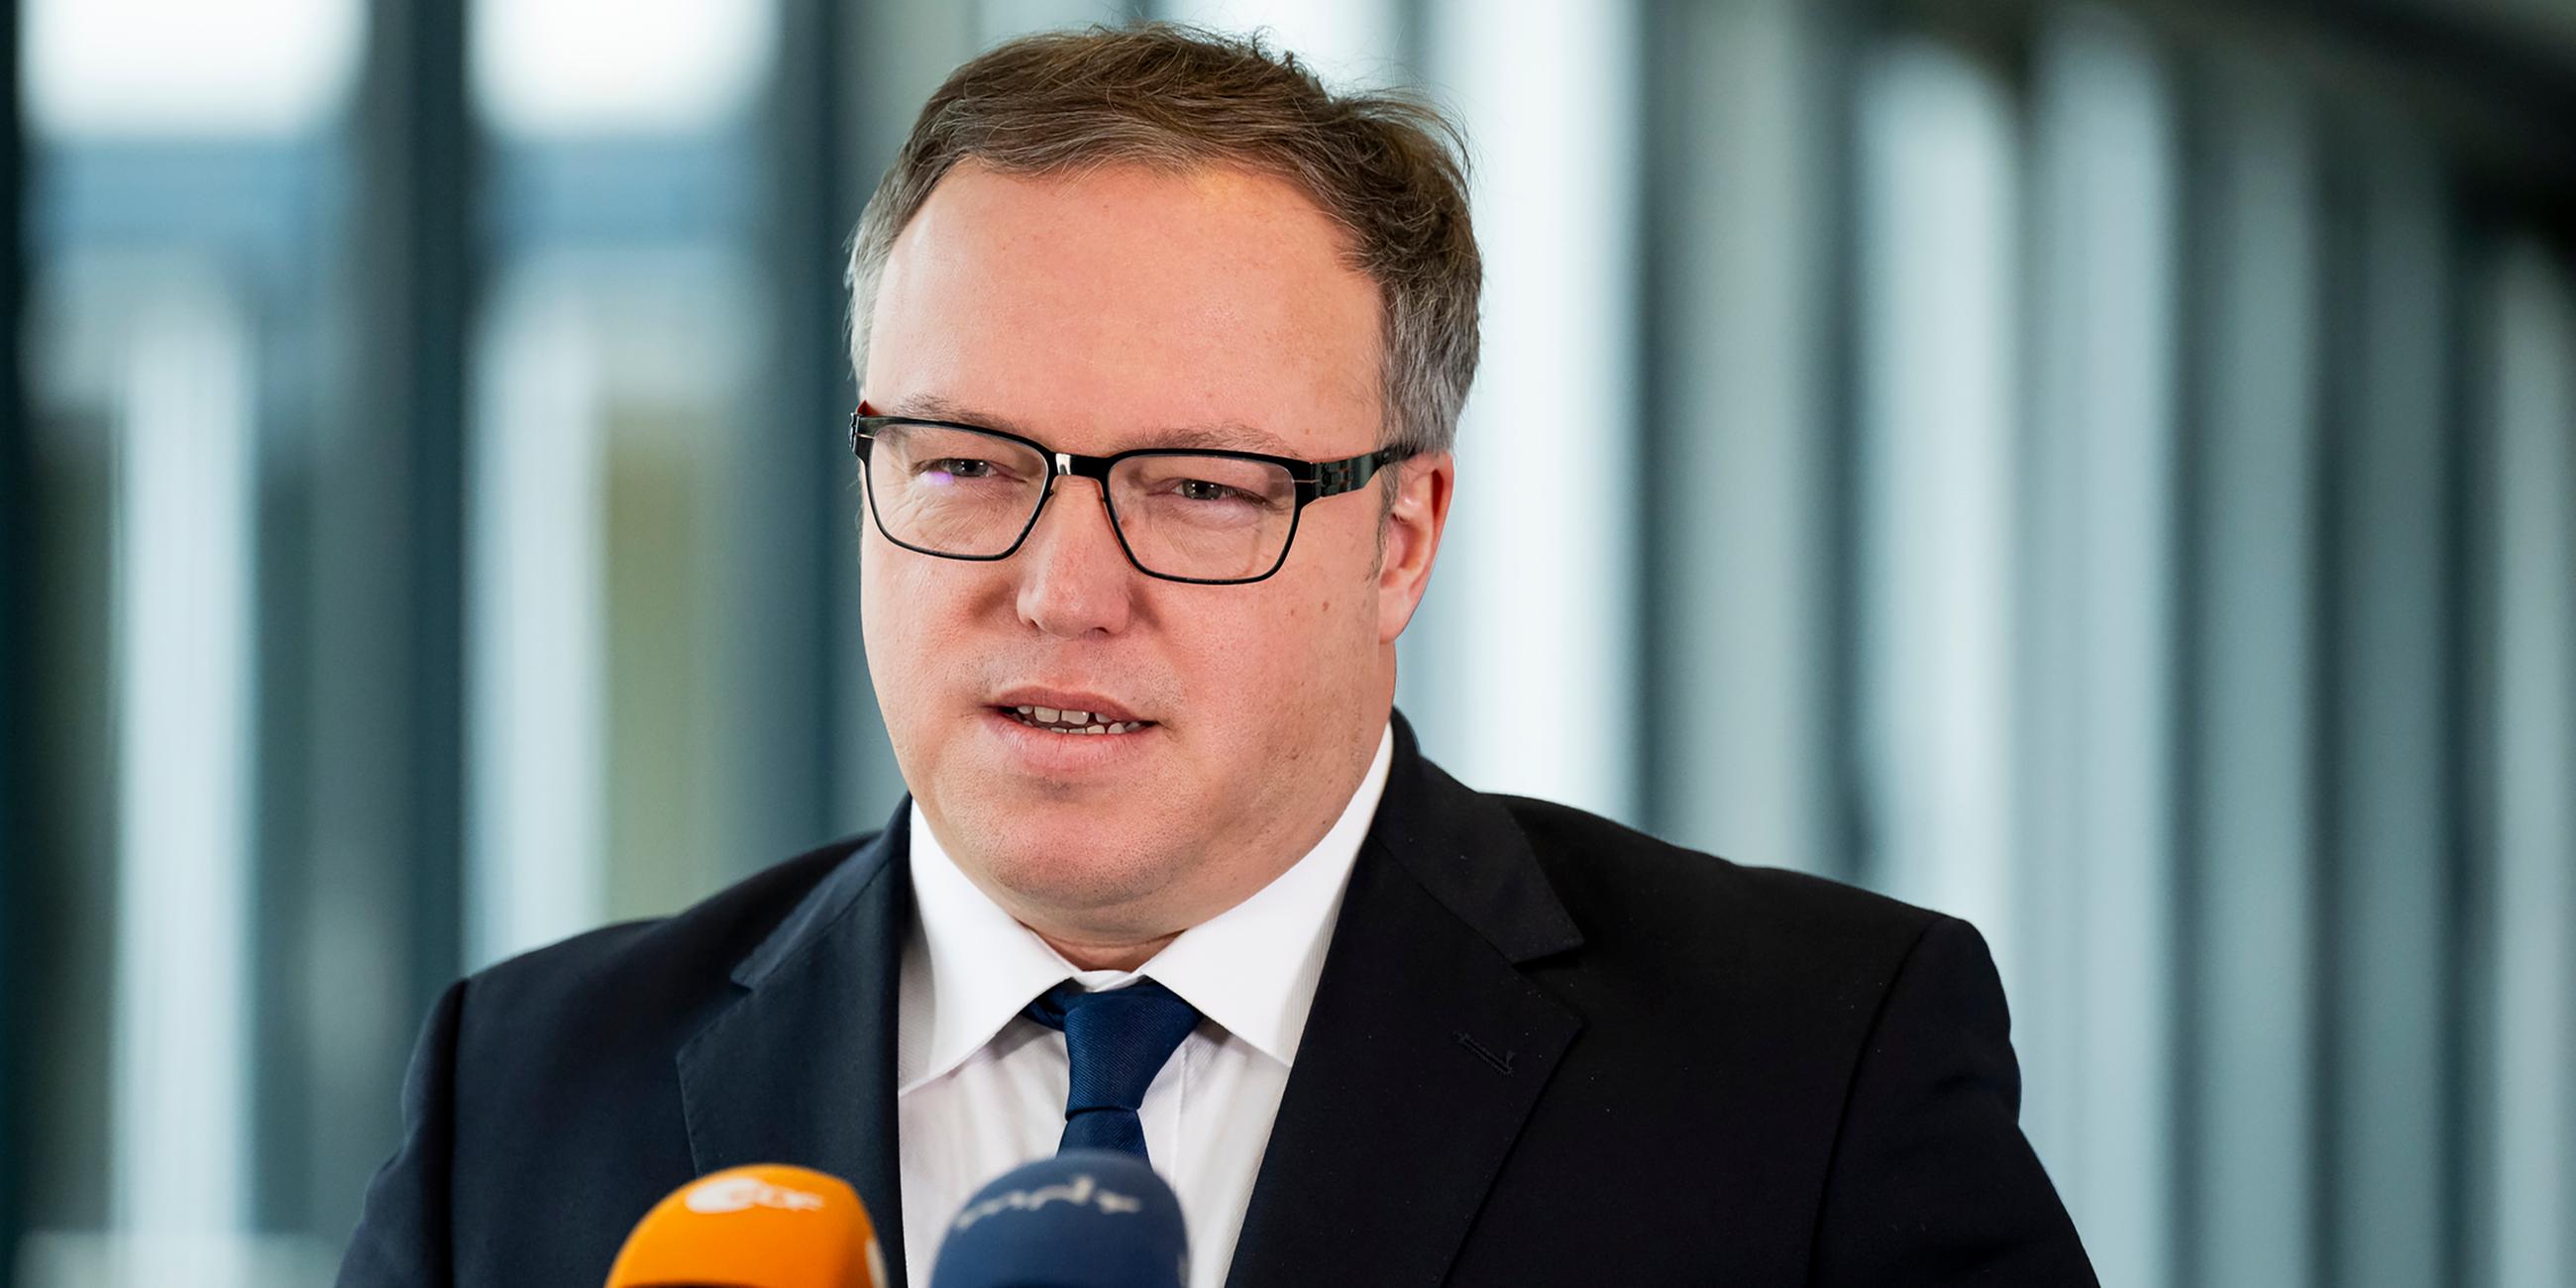 Mario Voigt, Partei- und Fraktionsvorsitzender der CDU Thüringen, gibt im Thüringer Landtag ein Pressestatement ab